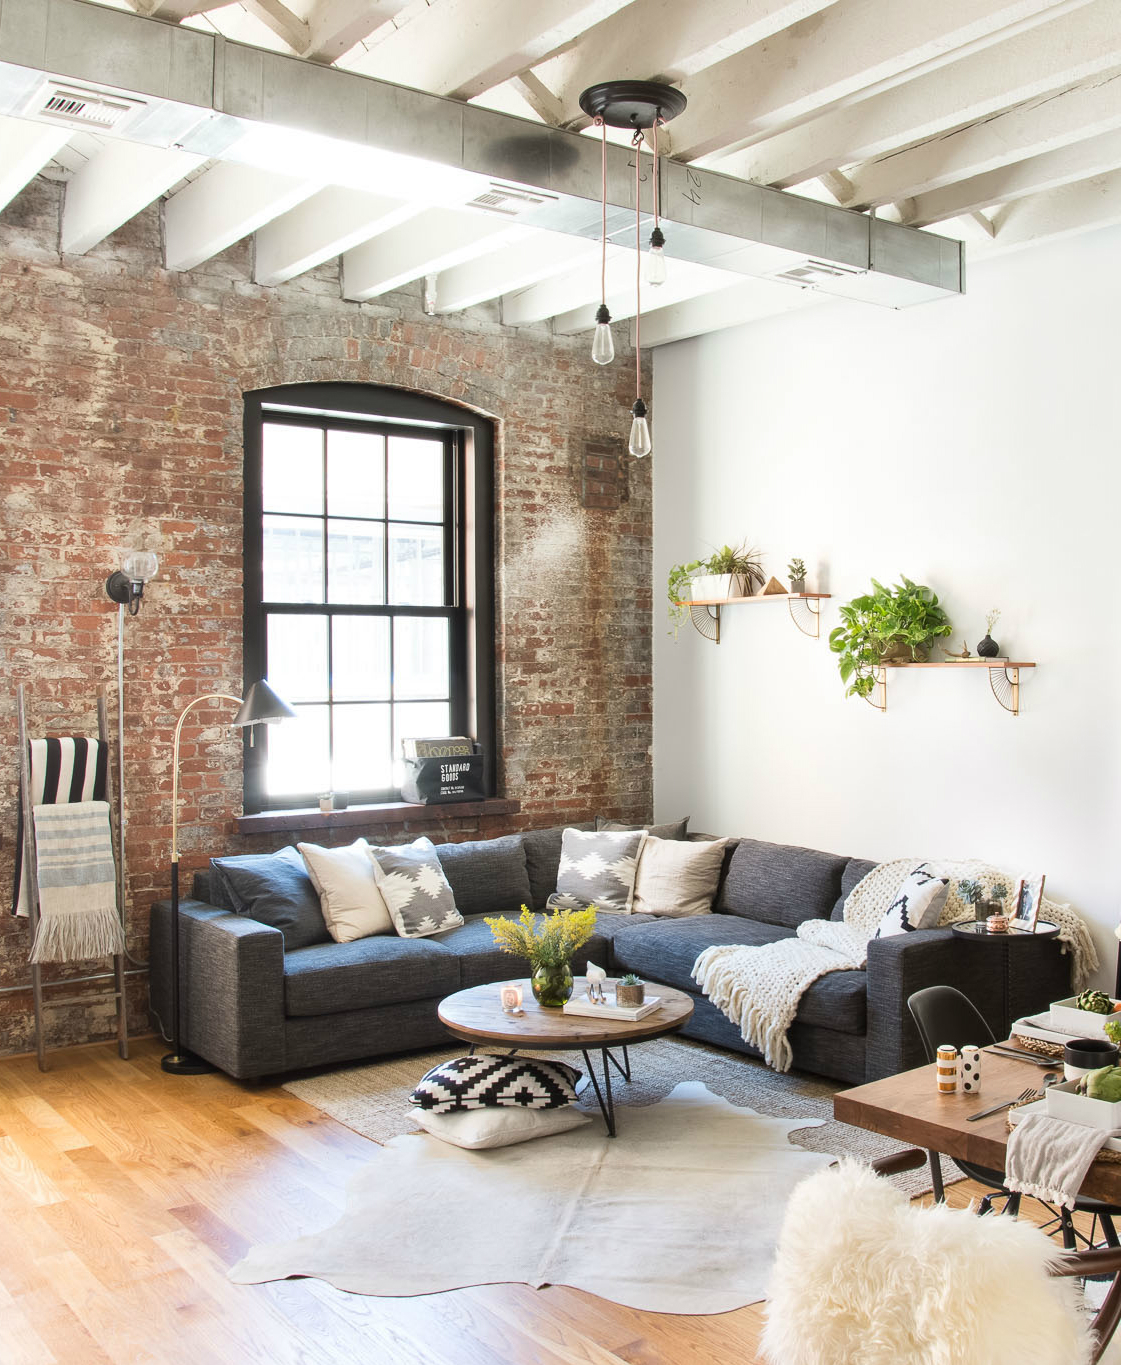 20 Decorating ideas for a cozy Home decor